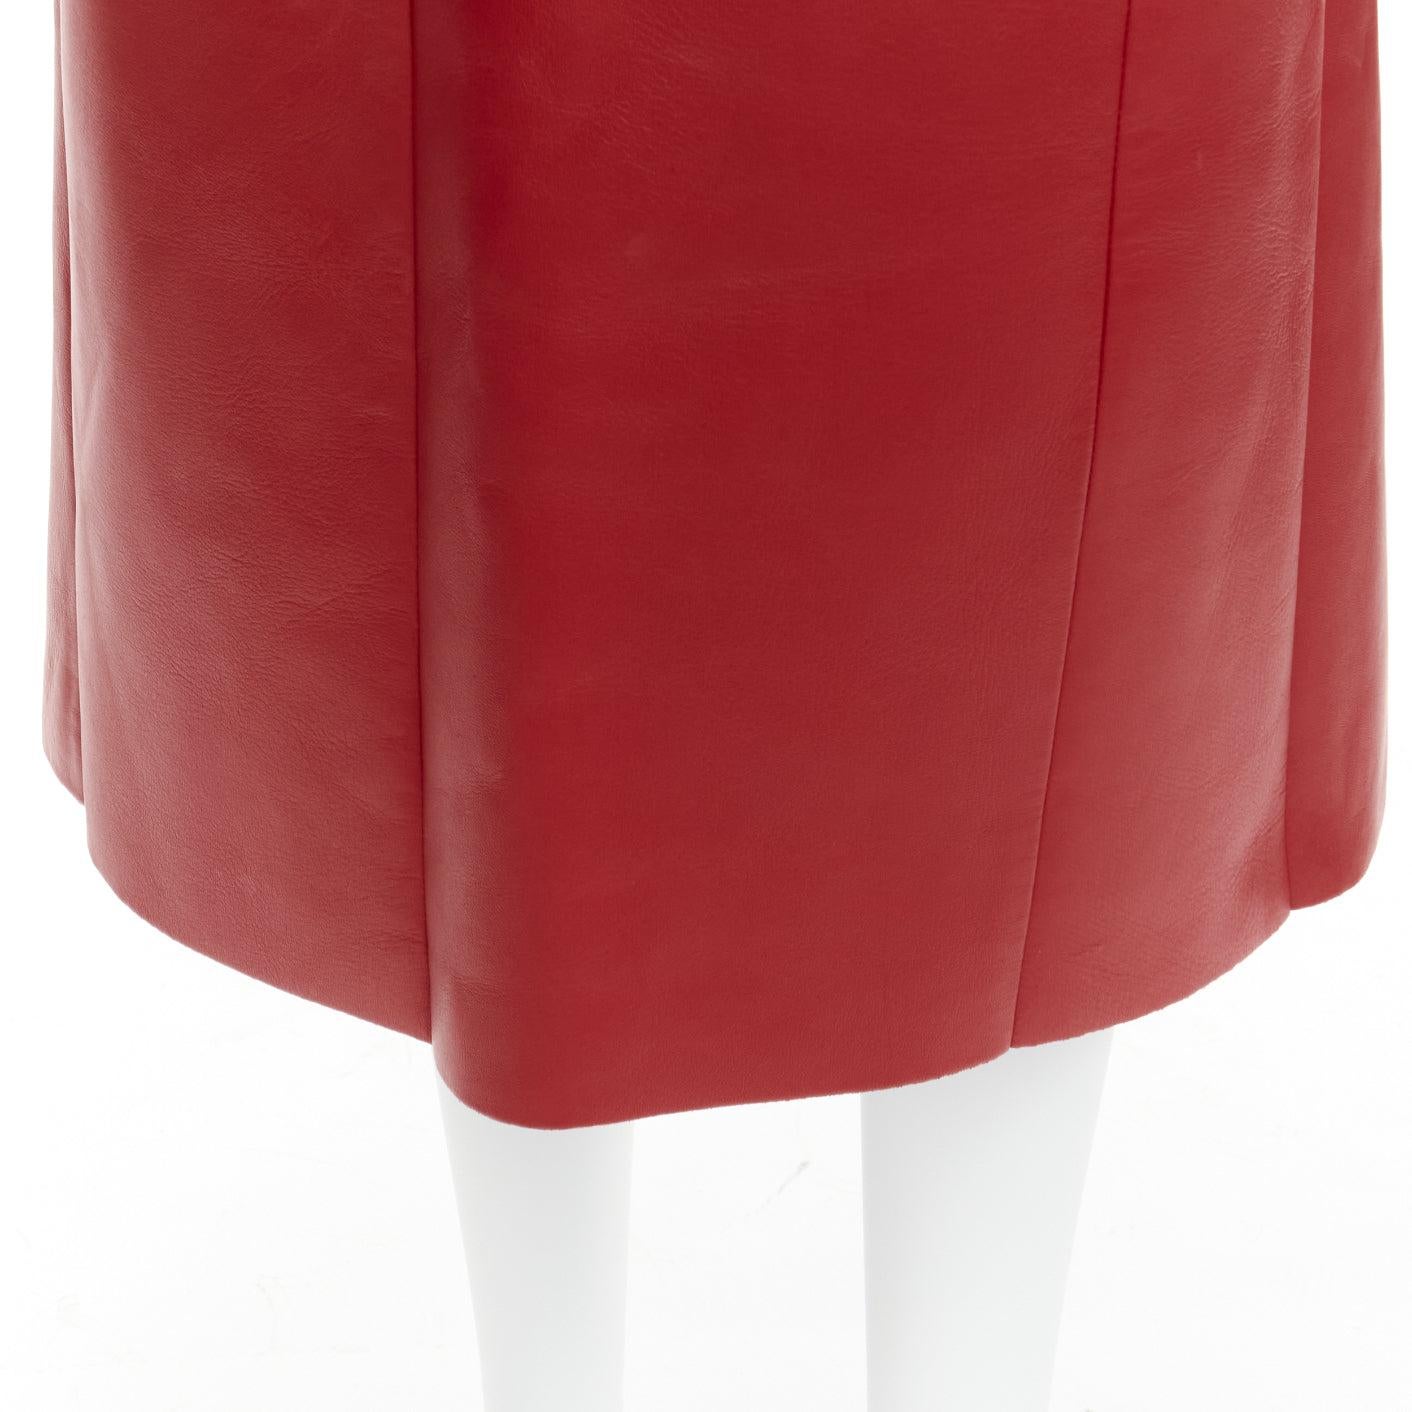 OLD CELINE Phoebe Philo red lambskin leather minimal panelled midi skirt FR36 S 4